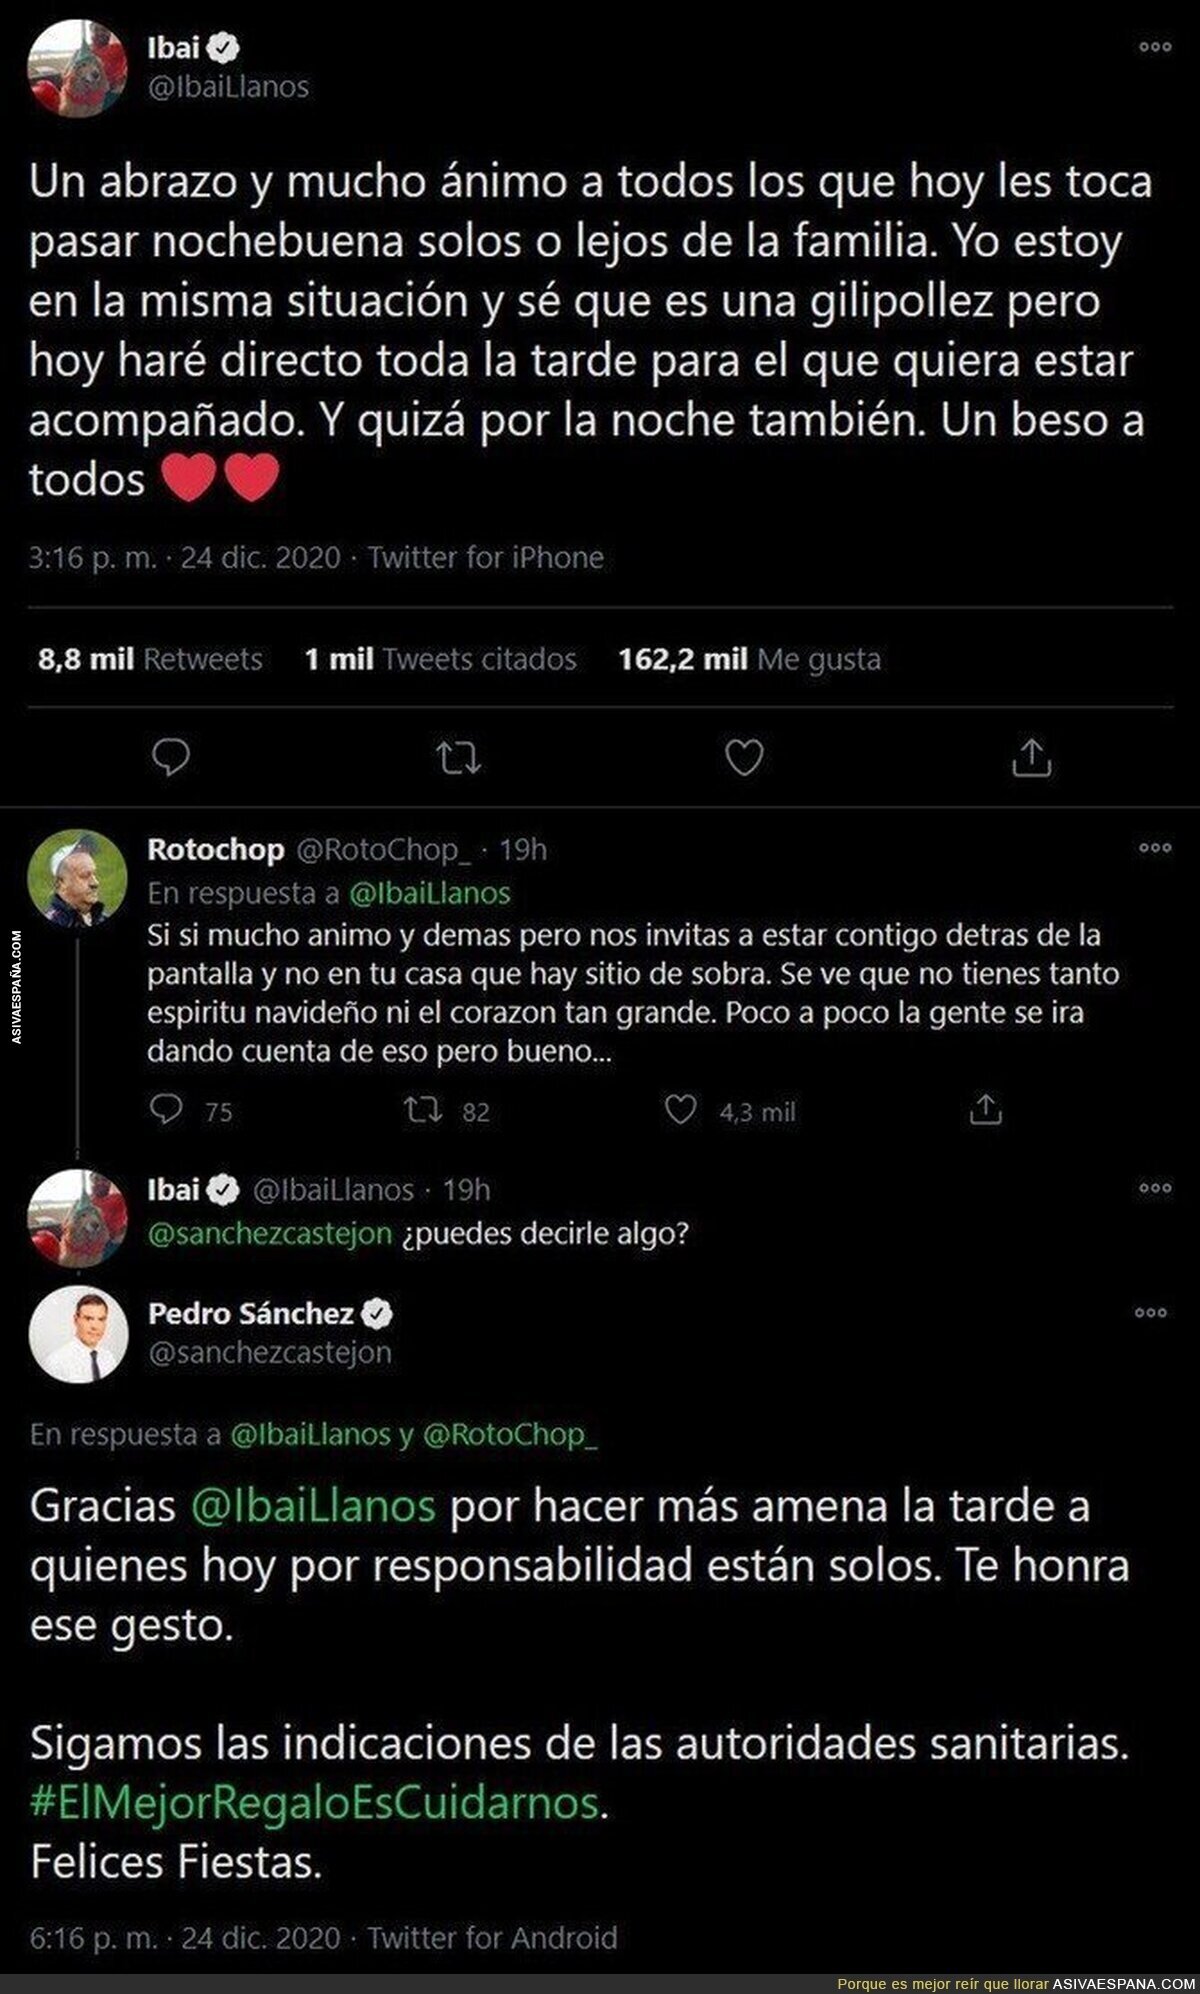 Ibai Llanos consigue que el presidente Pedro Sánchez le responda a su tuit pidiendo responsabilidad a la gente